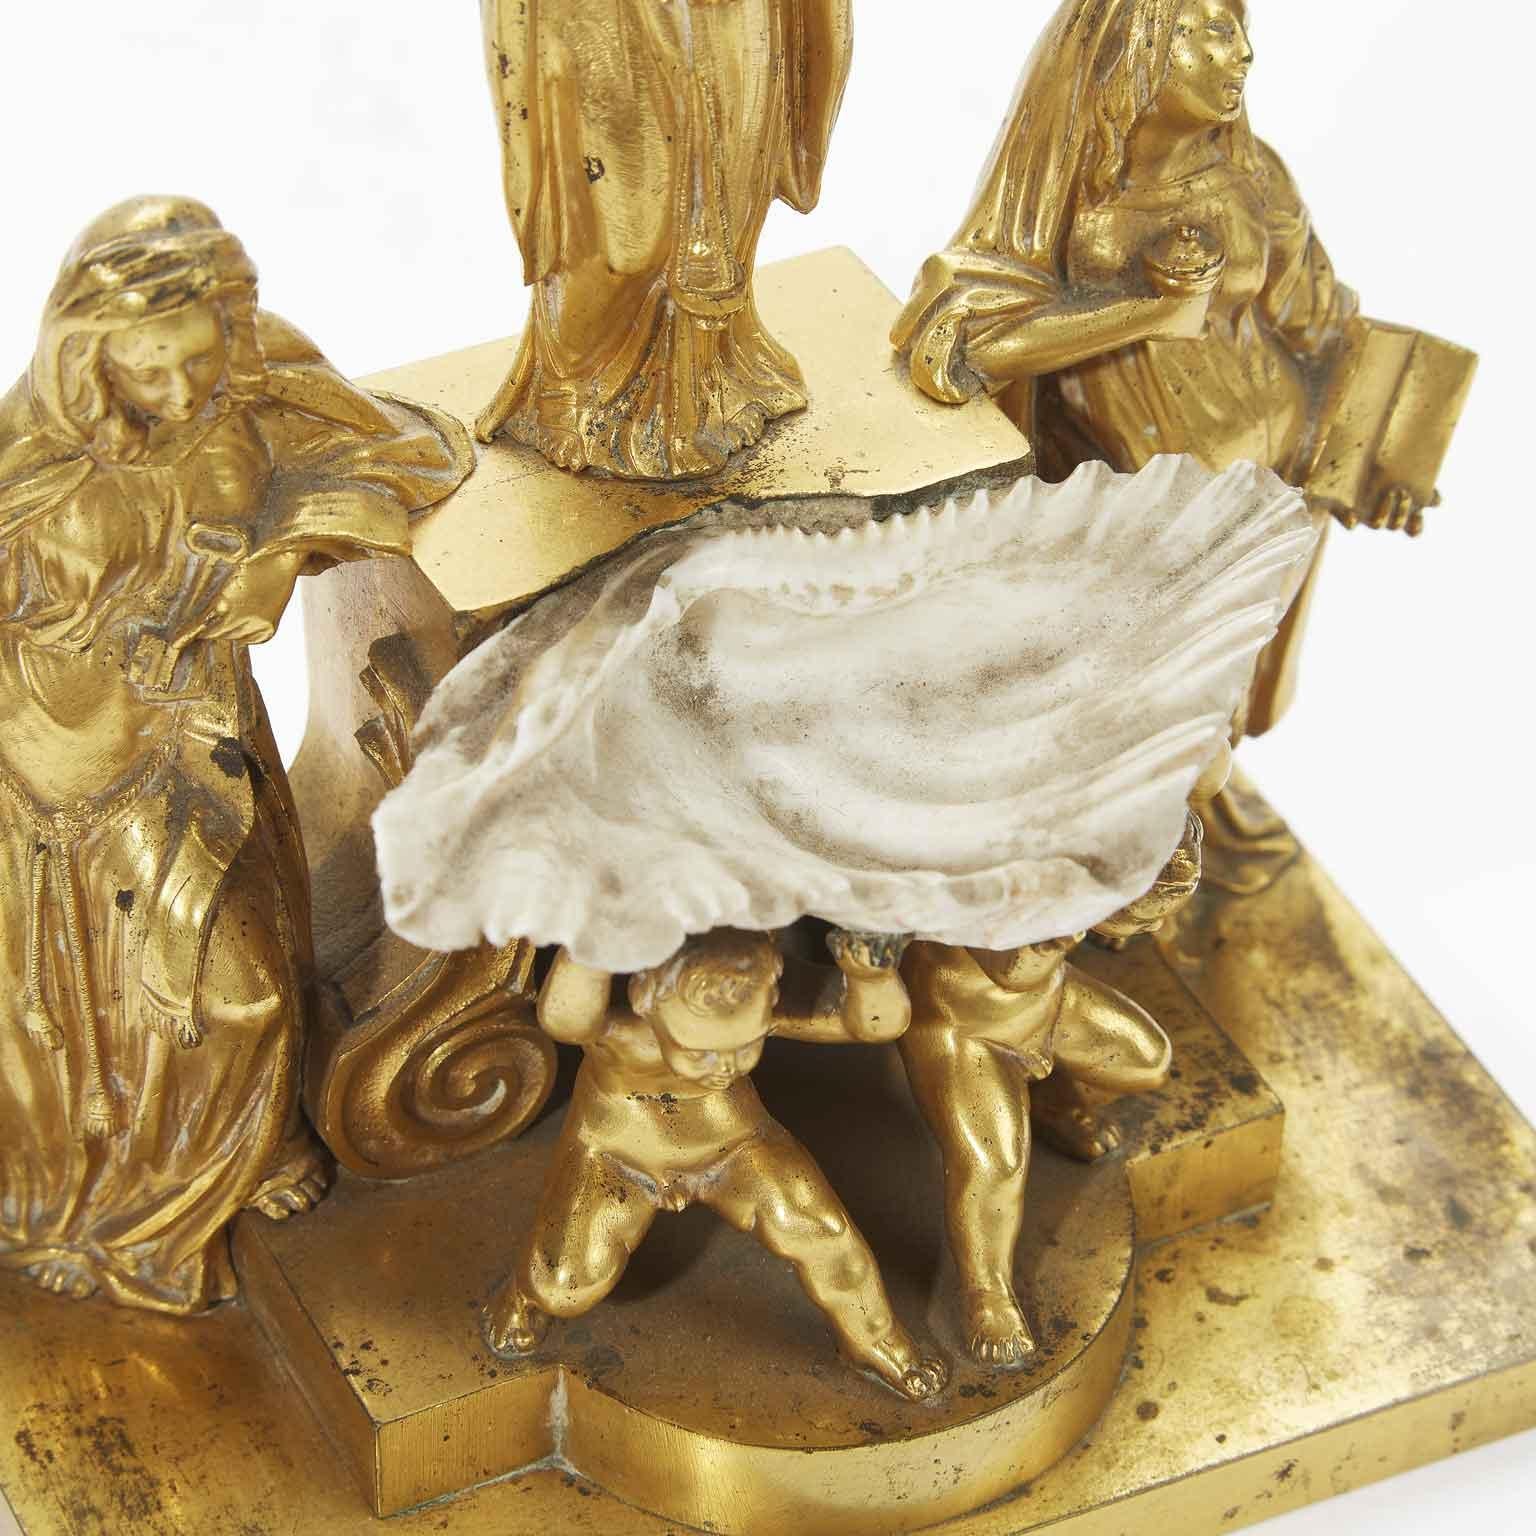 Italienische vergoldete Heilige Wasserkanne des 19. Jahrhunderts mit Putten, Engeln und Muscheln (Vergoldet)